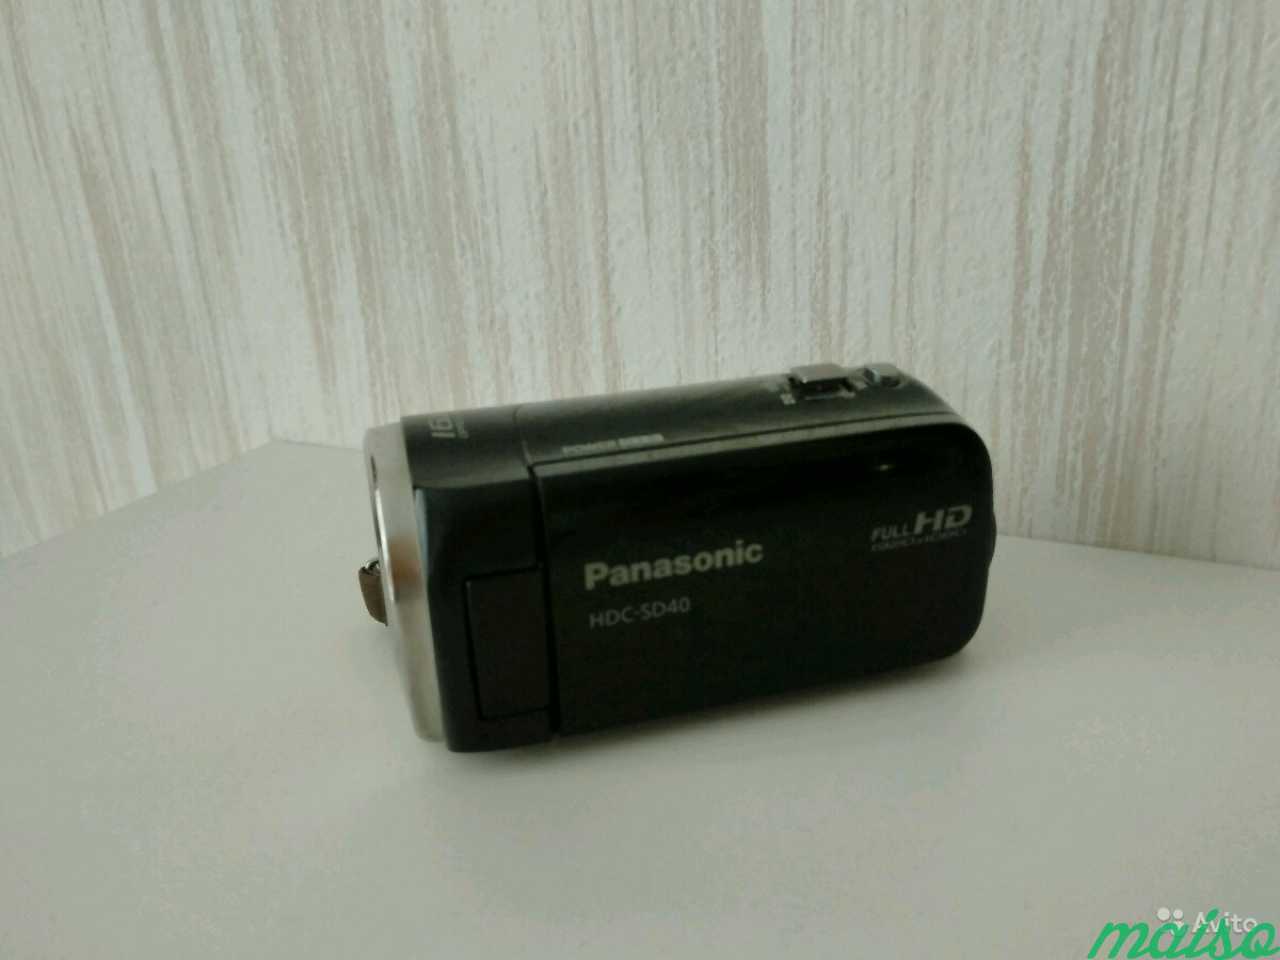 Видеокамера Panasonic hds sd40 в Санкт-Петербурге. Фото 3